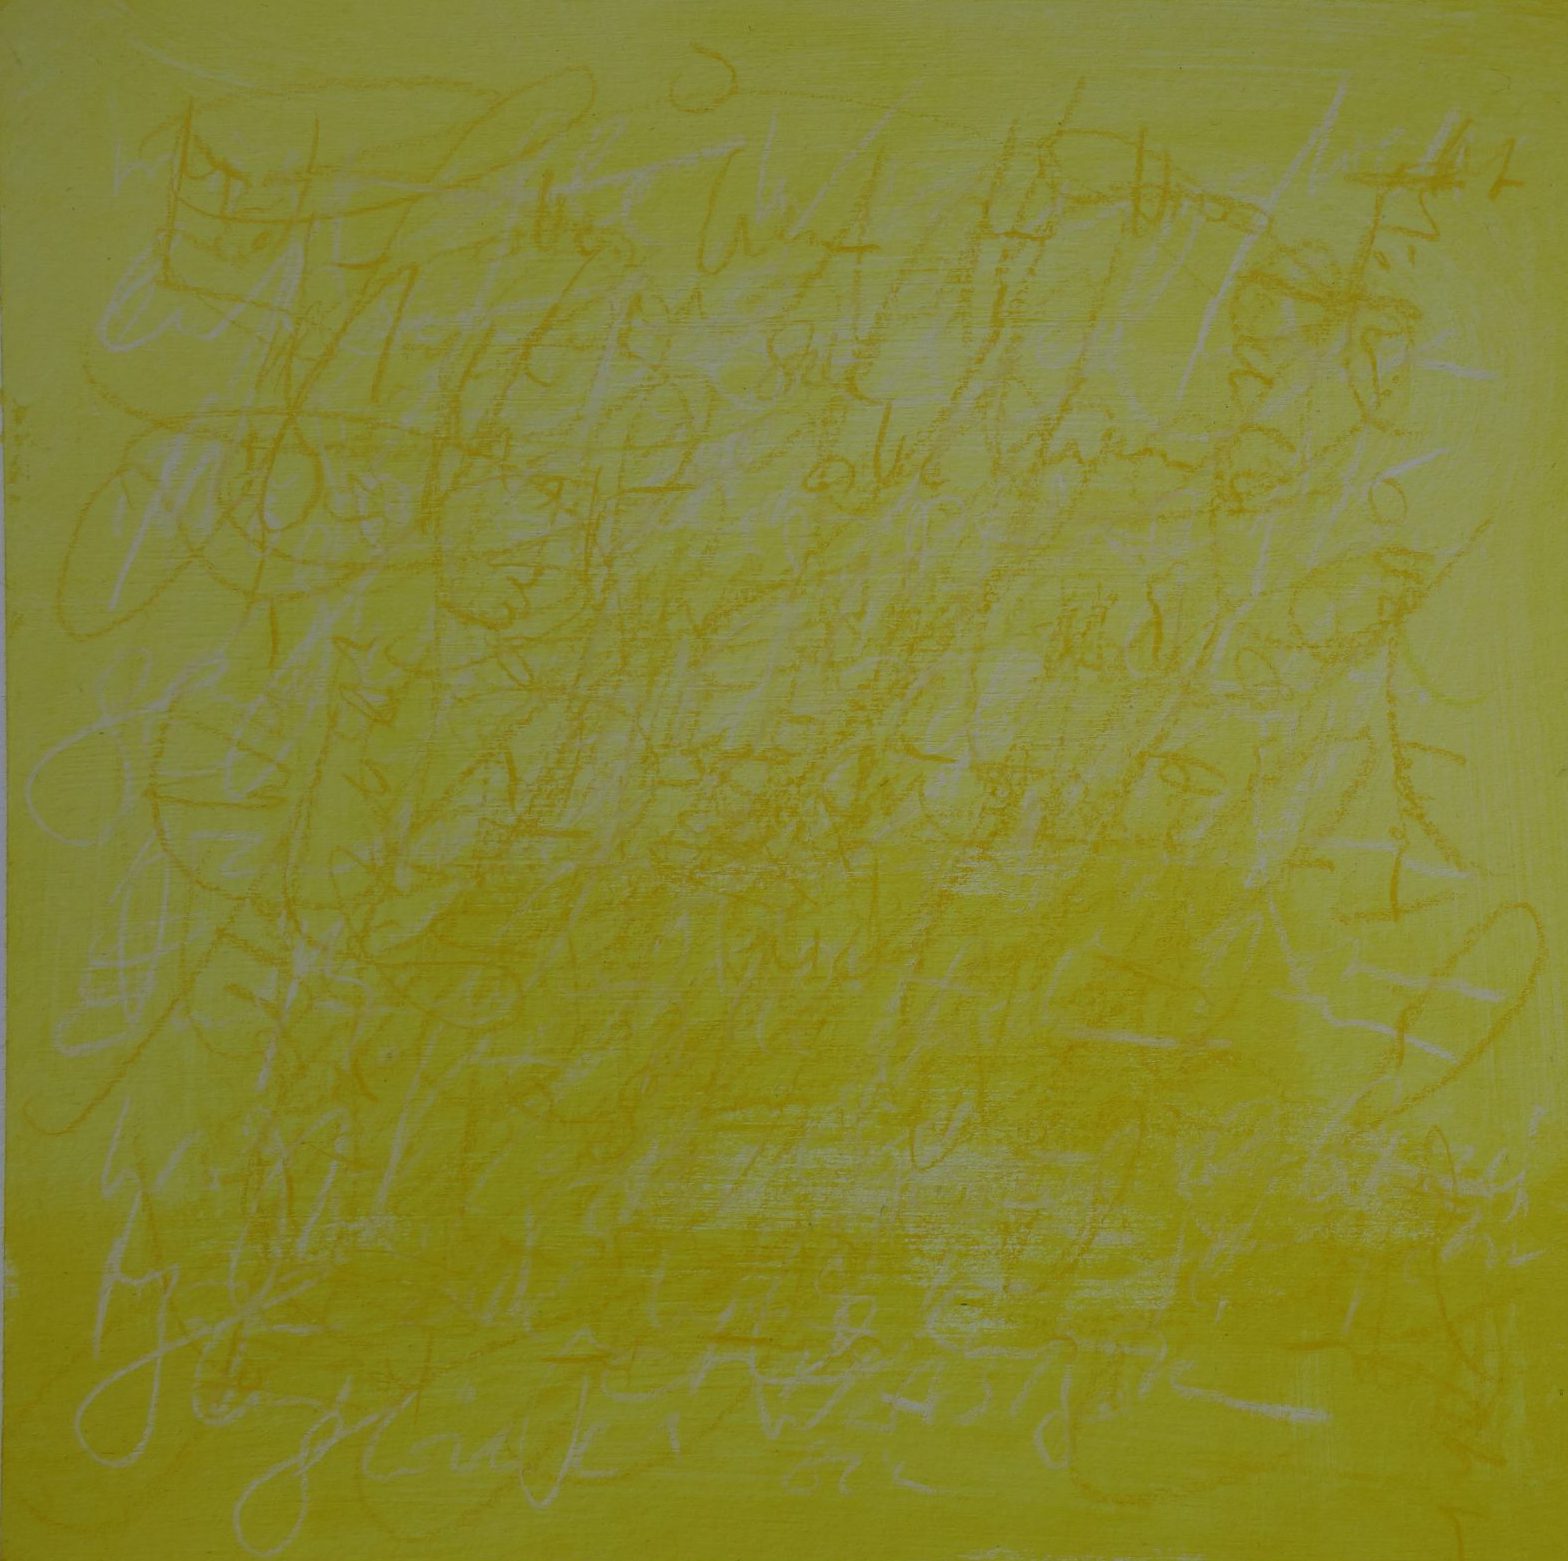 Das Foto zeigt ein quadratisches Gemälde in zartem Gelb, nach unten hin kräftiger werdend. Im Vordergrund ist in indisch gelb ein Terxt zu sehen, der nicht lesbar ist. Im unteren Bilsbereich ist der Text weiß.